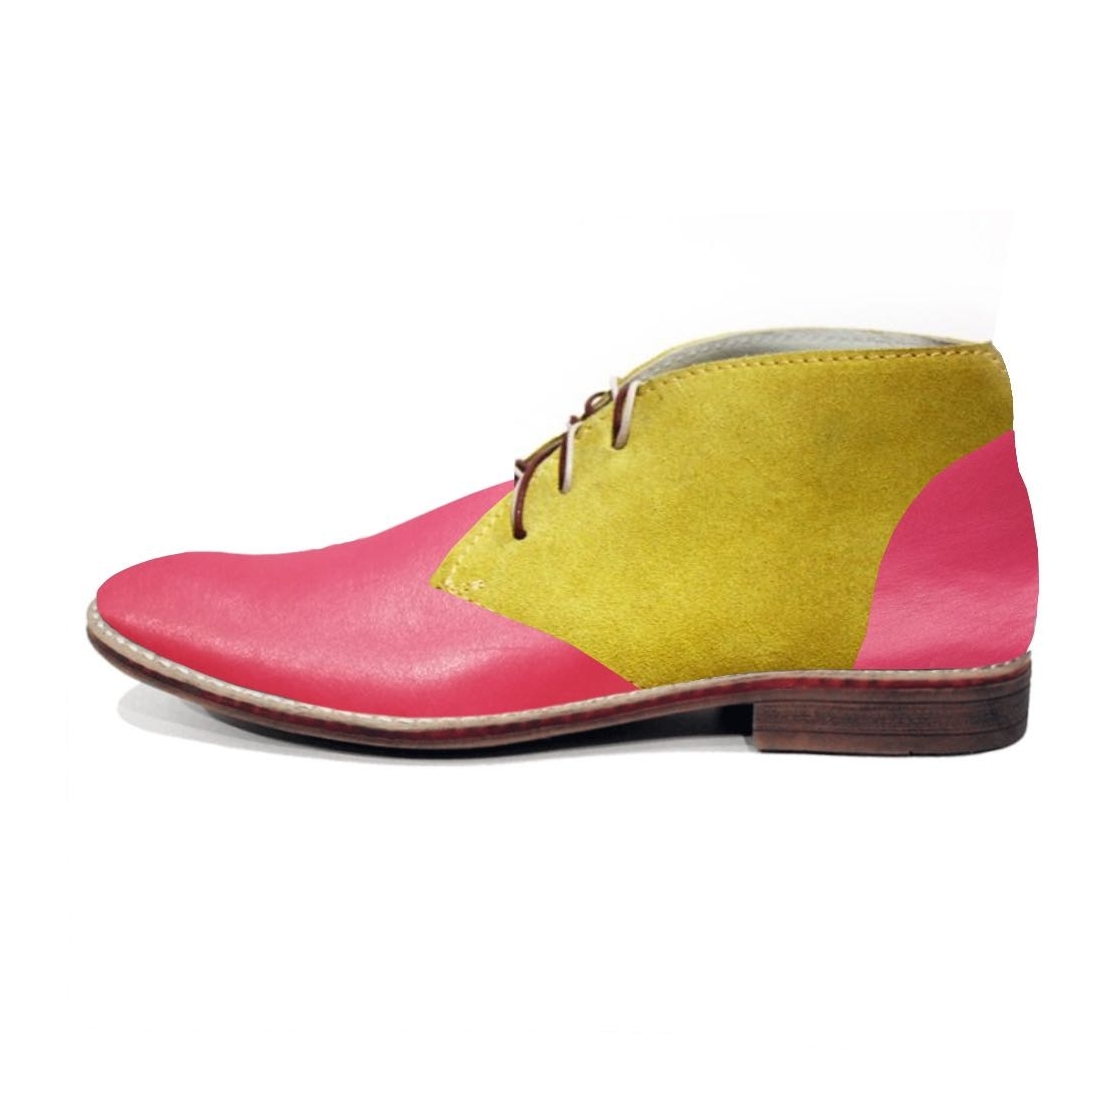 Modello Primavello -  Chukka Stiefel - Handmade Colorful Italian Leather Shoes